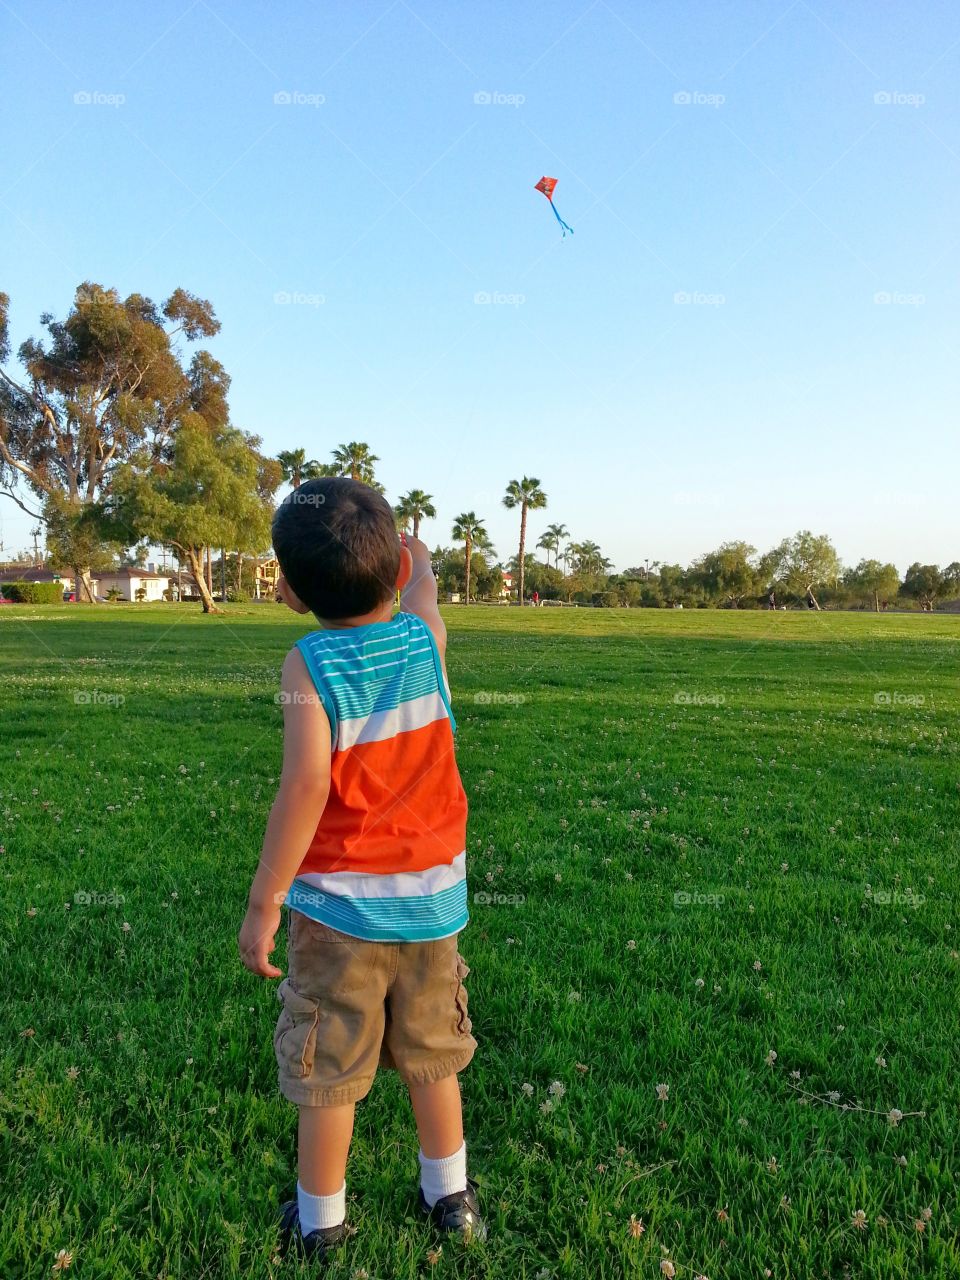 Kite at the park